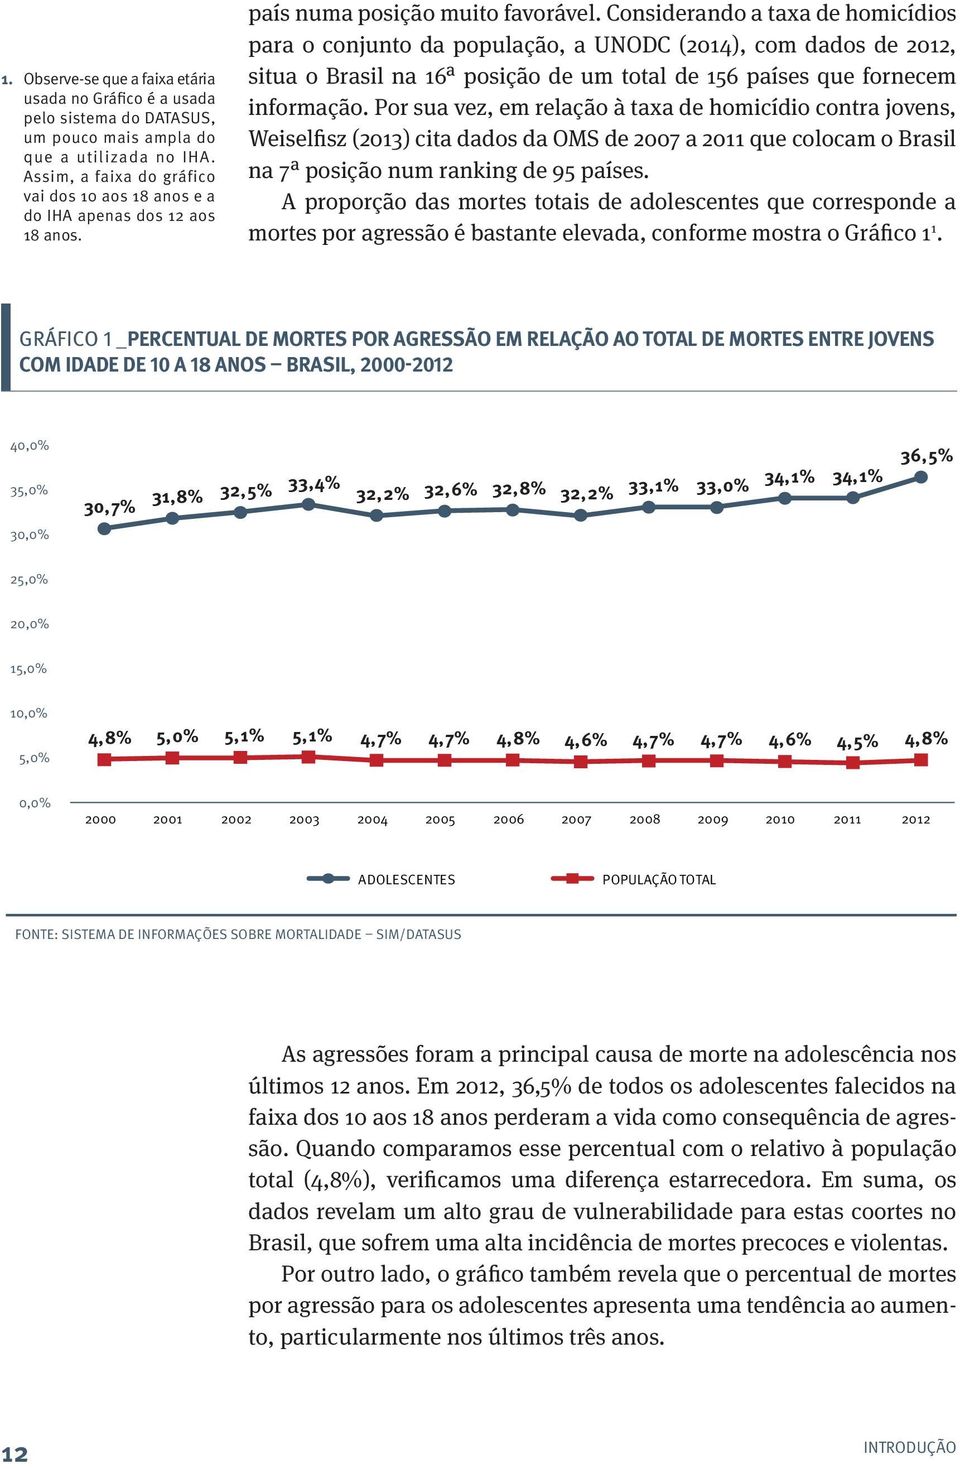 Considerando a taxa de homicídios para o conjunto da população, a UNODC (2014), com dados de 2012, situa o Brasil na 16ª posição de um total de 156 países que fornecem informação.